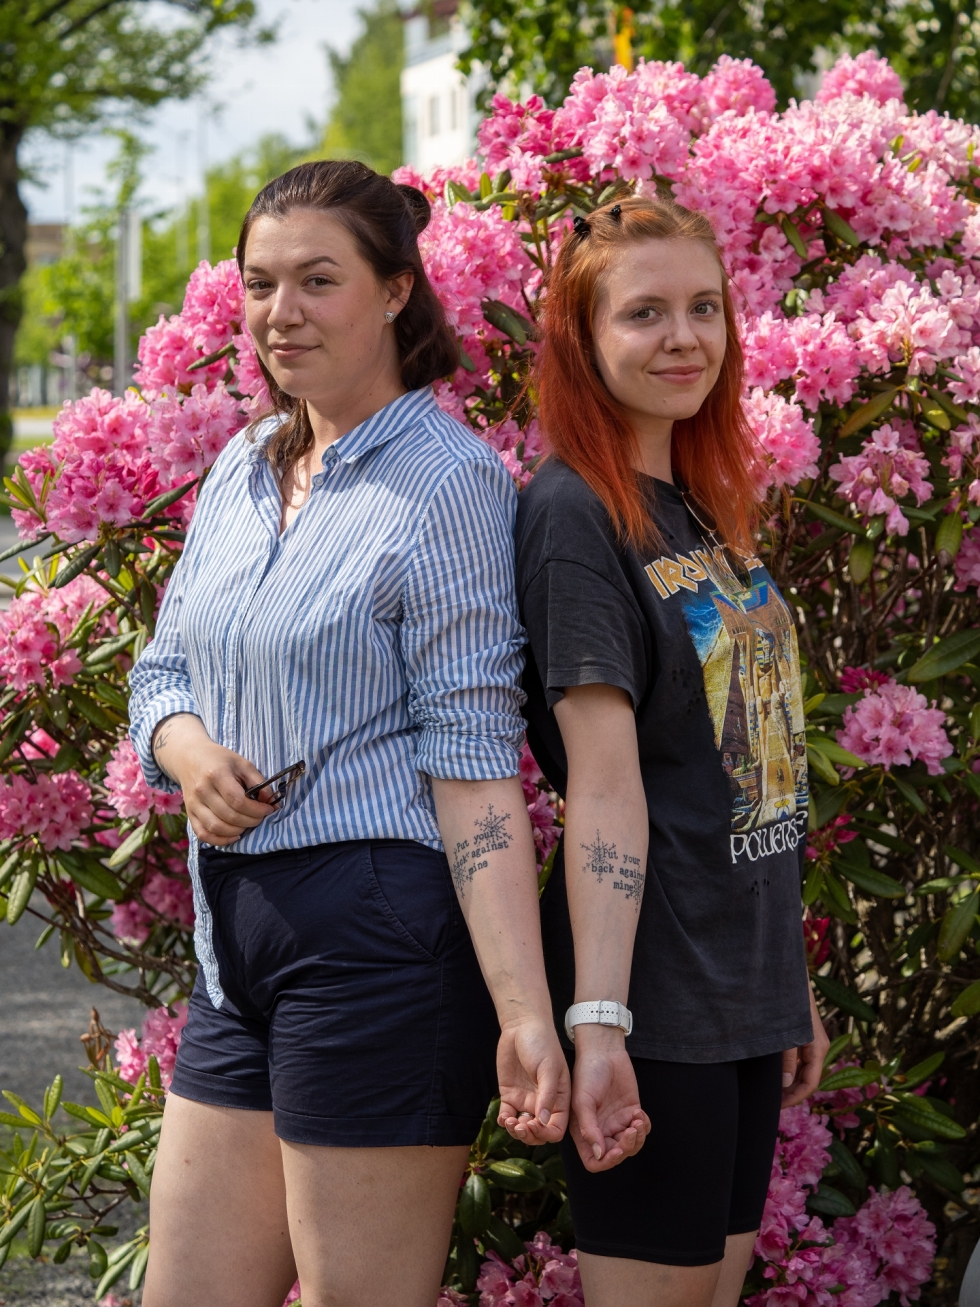 Siskokset Julia Hacklin ja Jenny Hukka eivät muista, kumman idea samanlaisten tatuointien ottaminen alun perin oli. Joka tapauksessa siitä vitsailtiin vuoden verran ennen kuin suunnitelma päätettiin toteuttaa vuonna 2019. – Pidämme molemmat tatuoinneista taiteena ja haluamme ilmaista niillä itseämme, Hacklin kertoo.